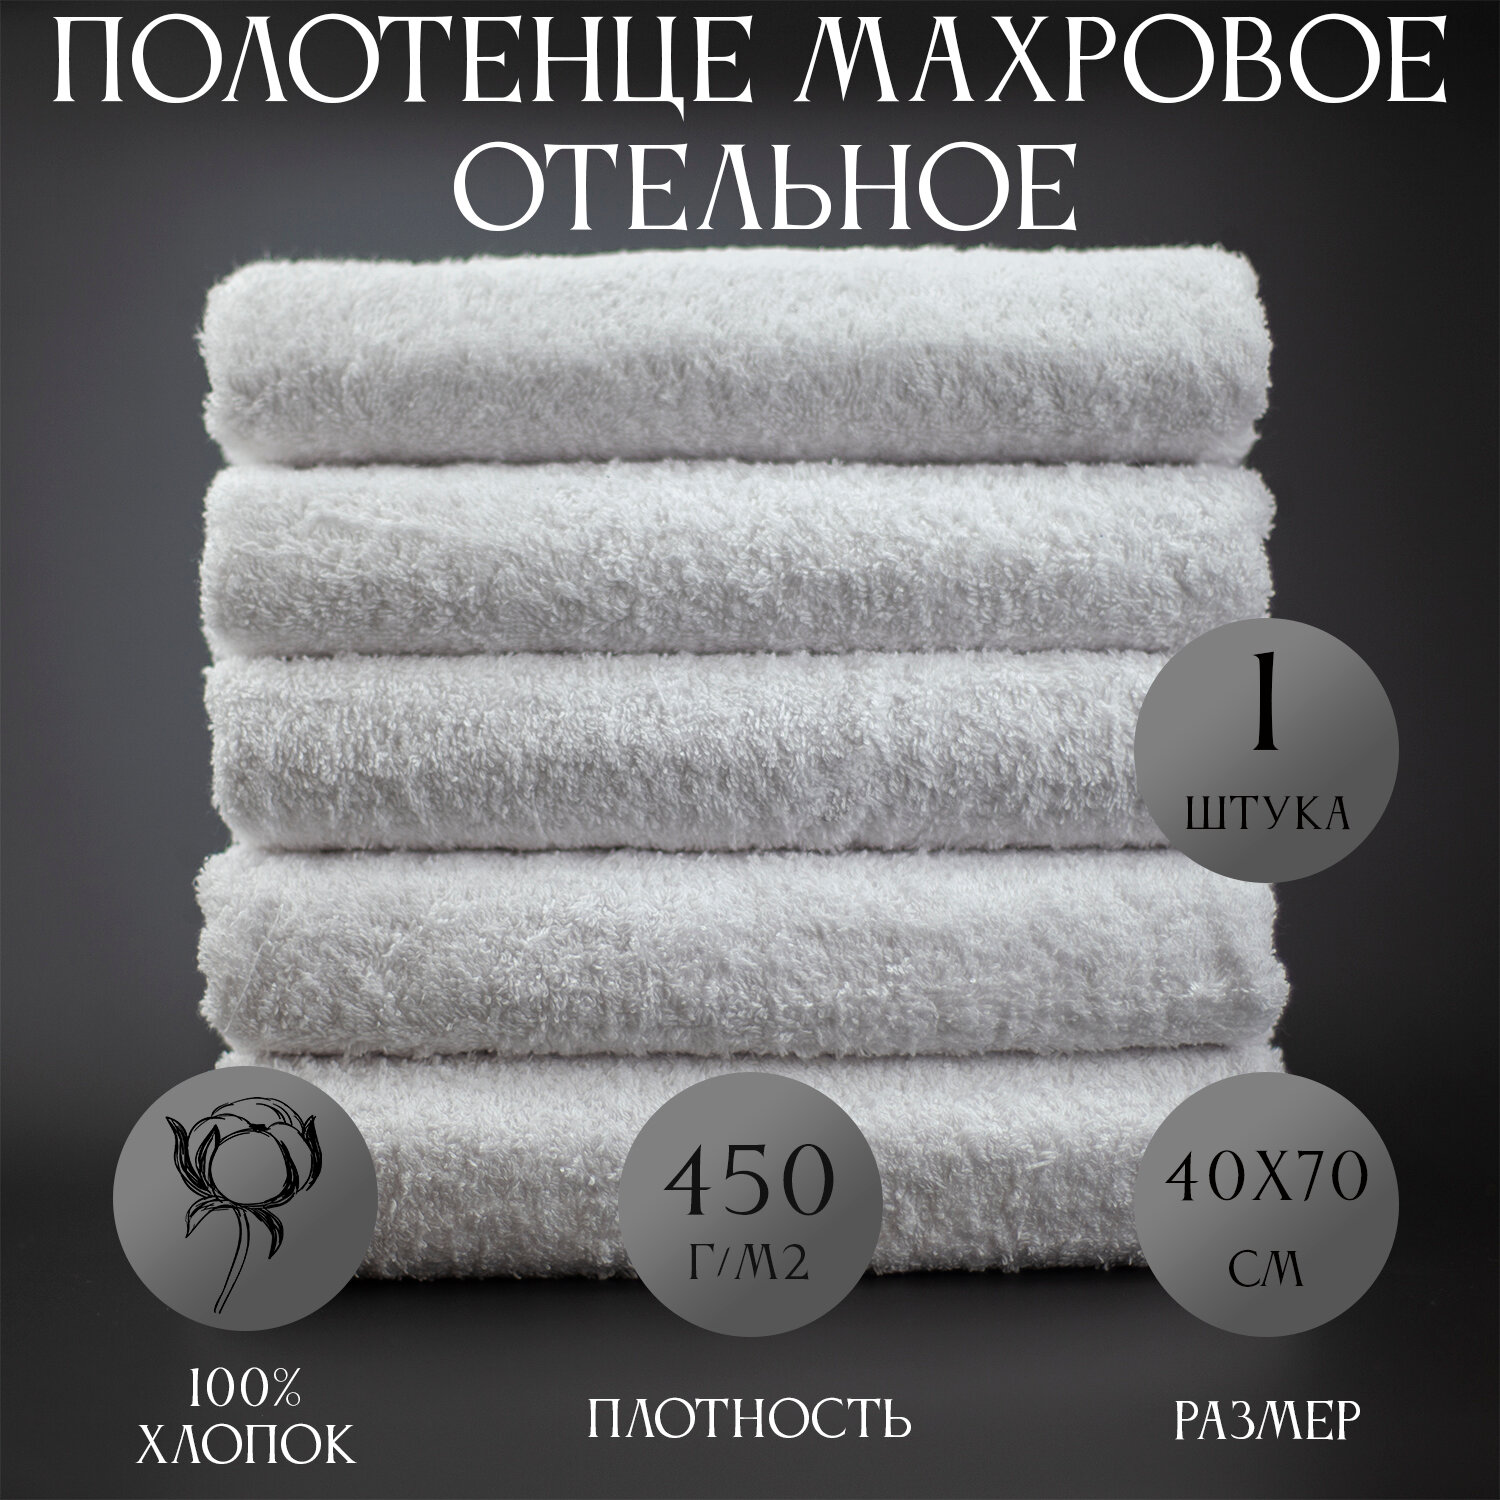 Полотенце махровое Отельное белое 450гр (40х70 см), 100% хлопок, 1шт белое.